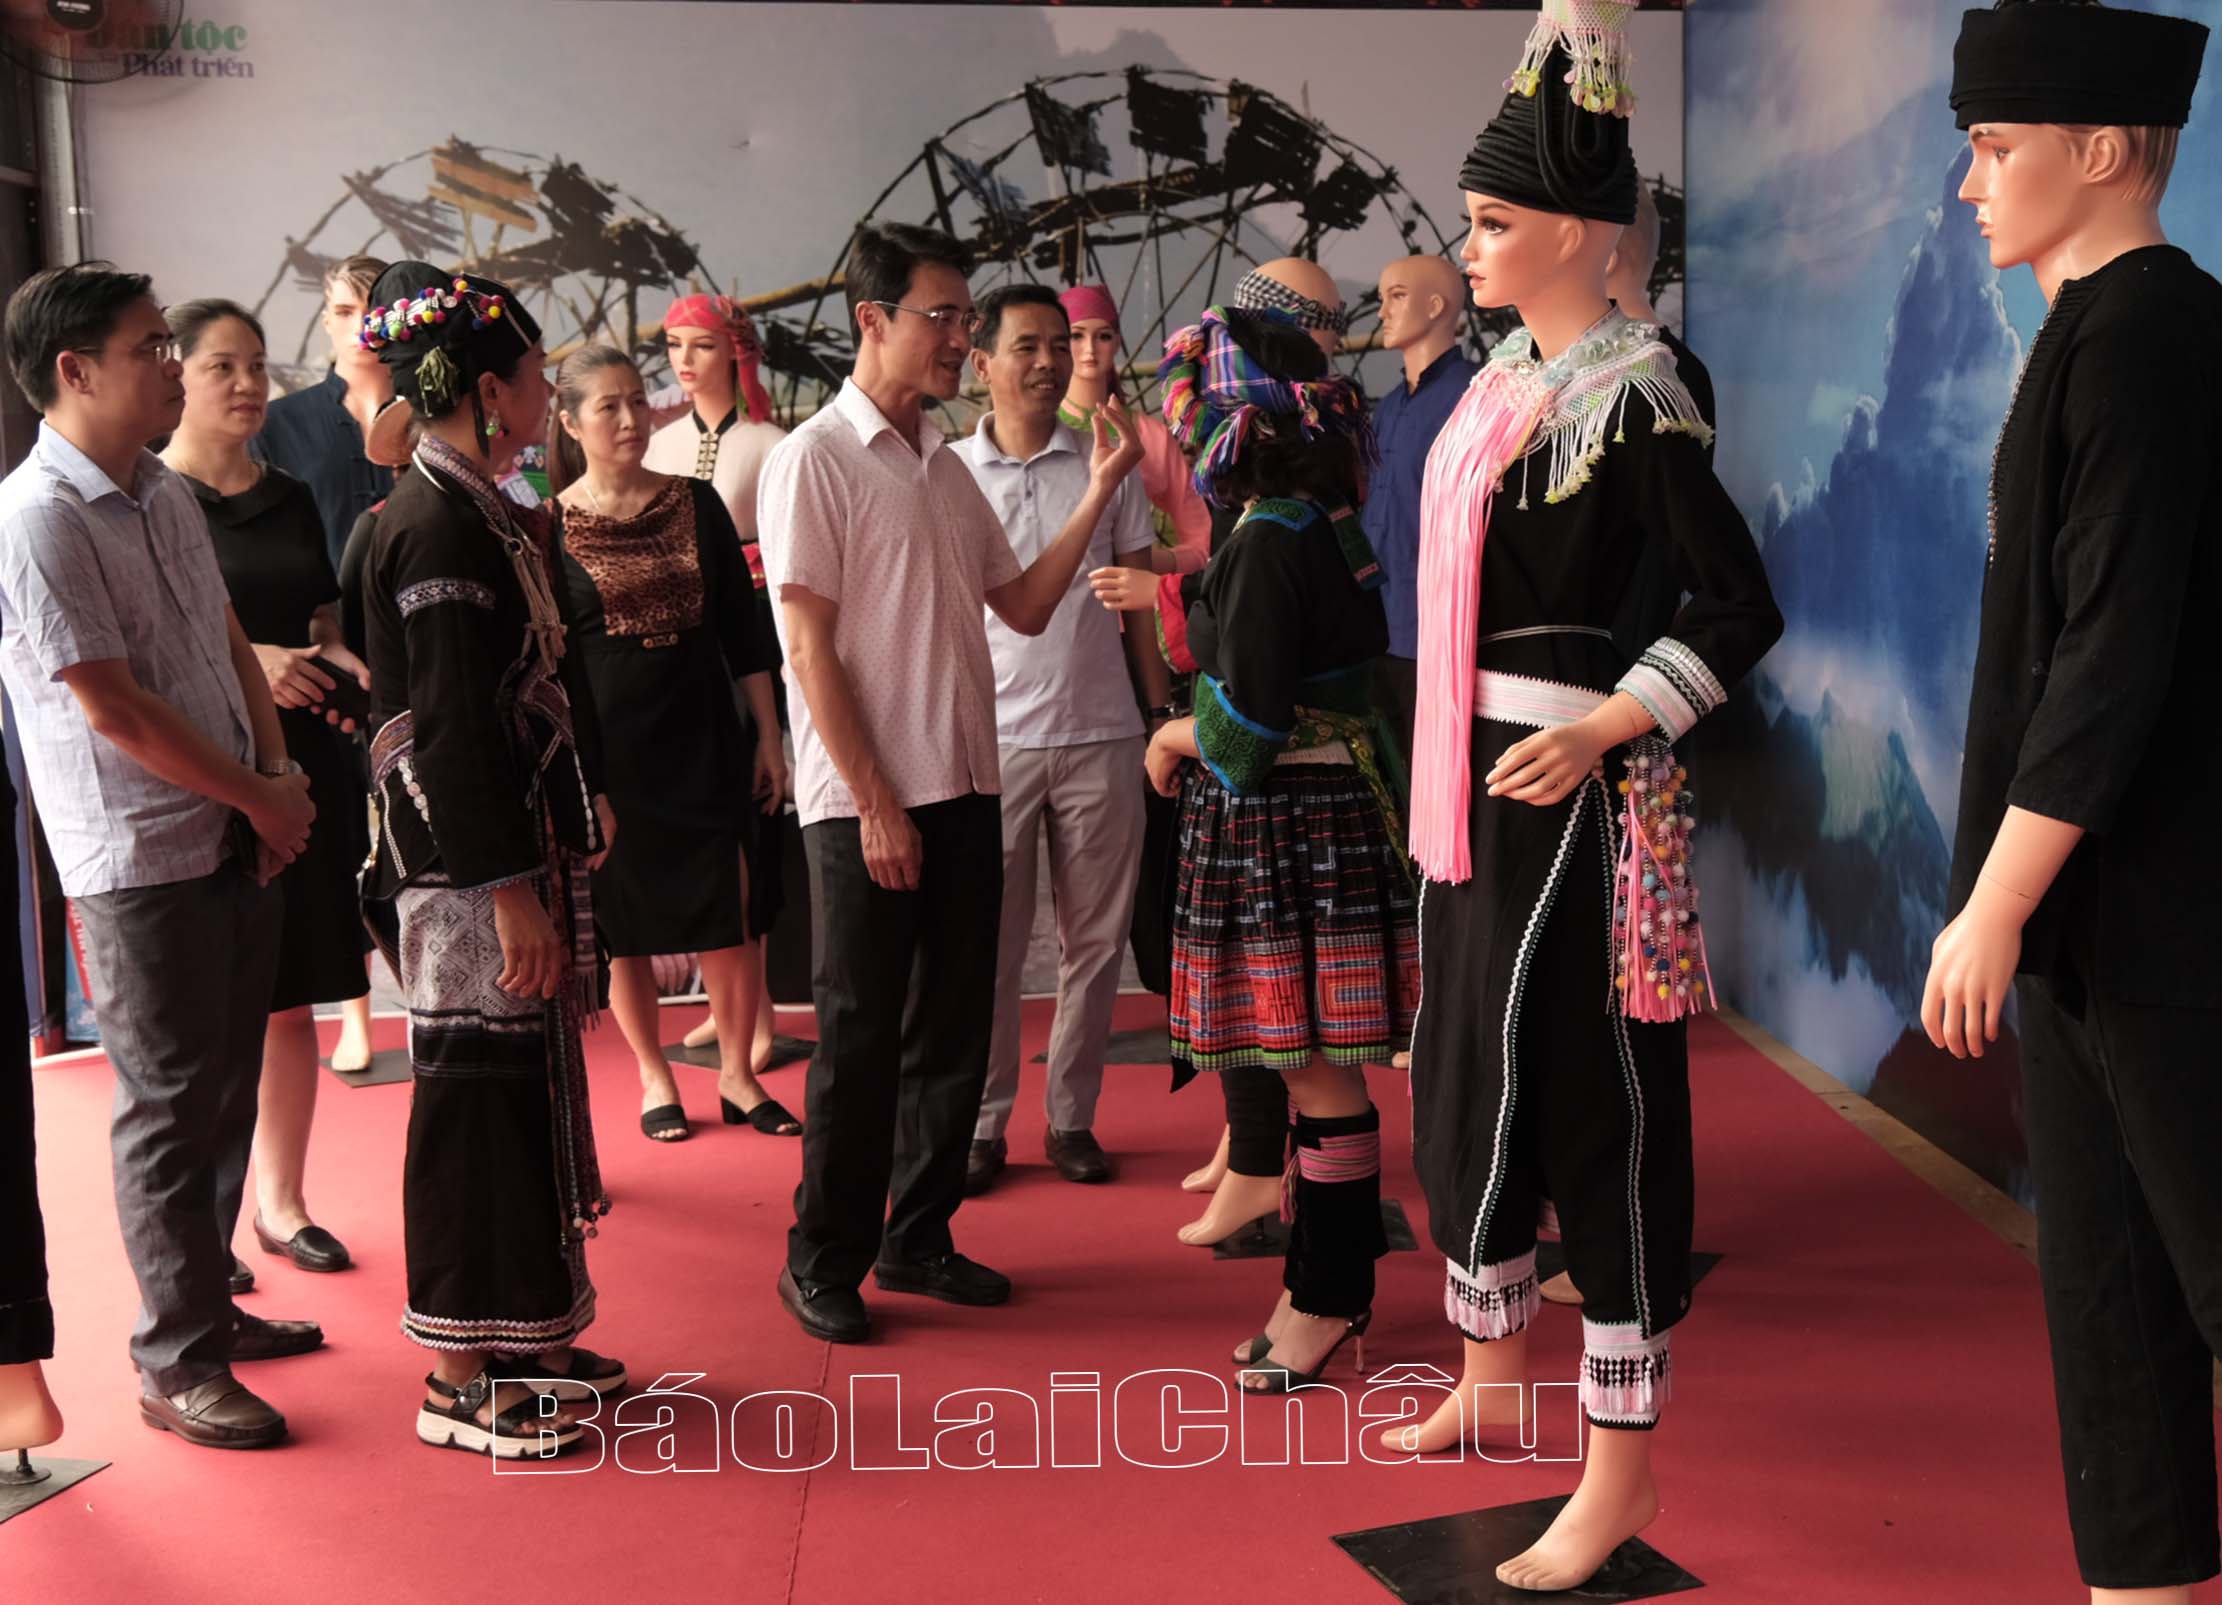 Đồng chí Hà Trọng Hải - Phó Chủ tịch UBND tỉnh và đại diện lãnh đạo một số sở, ngành tỉnh thăm, kiểm tra khu trưng bày không gian văn hóa trước giờ khai mạc.